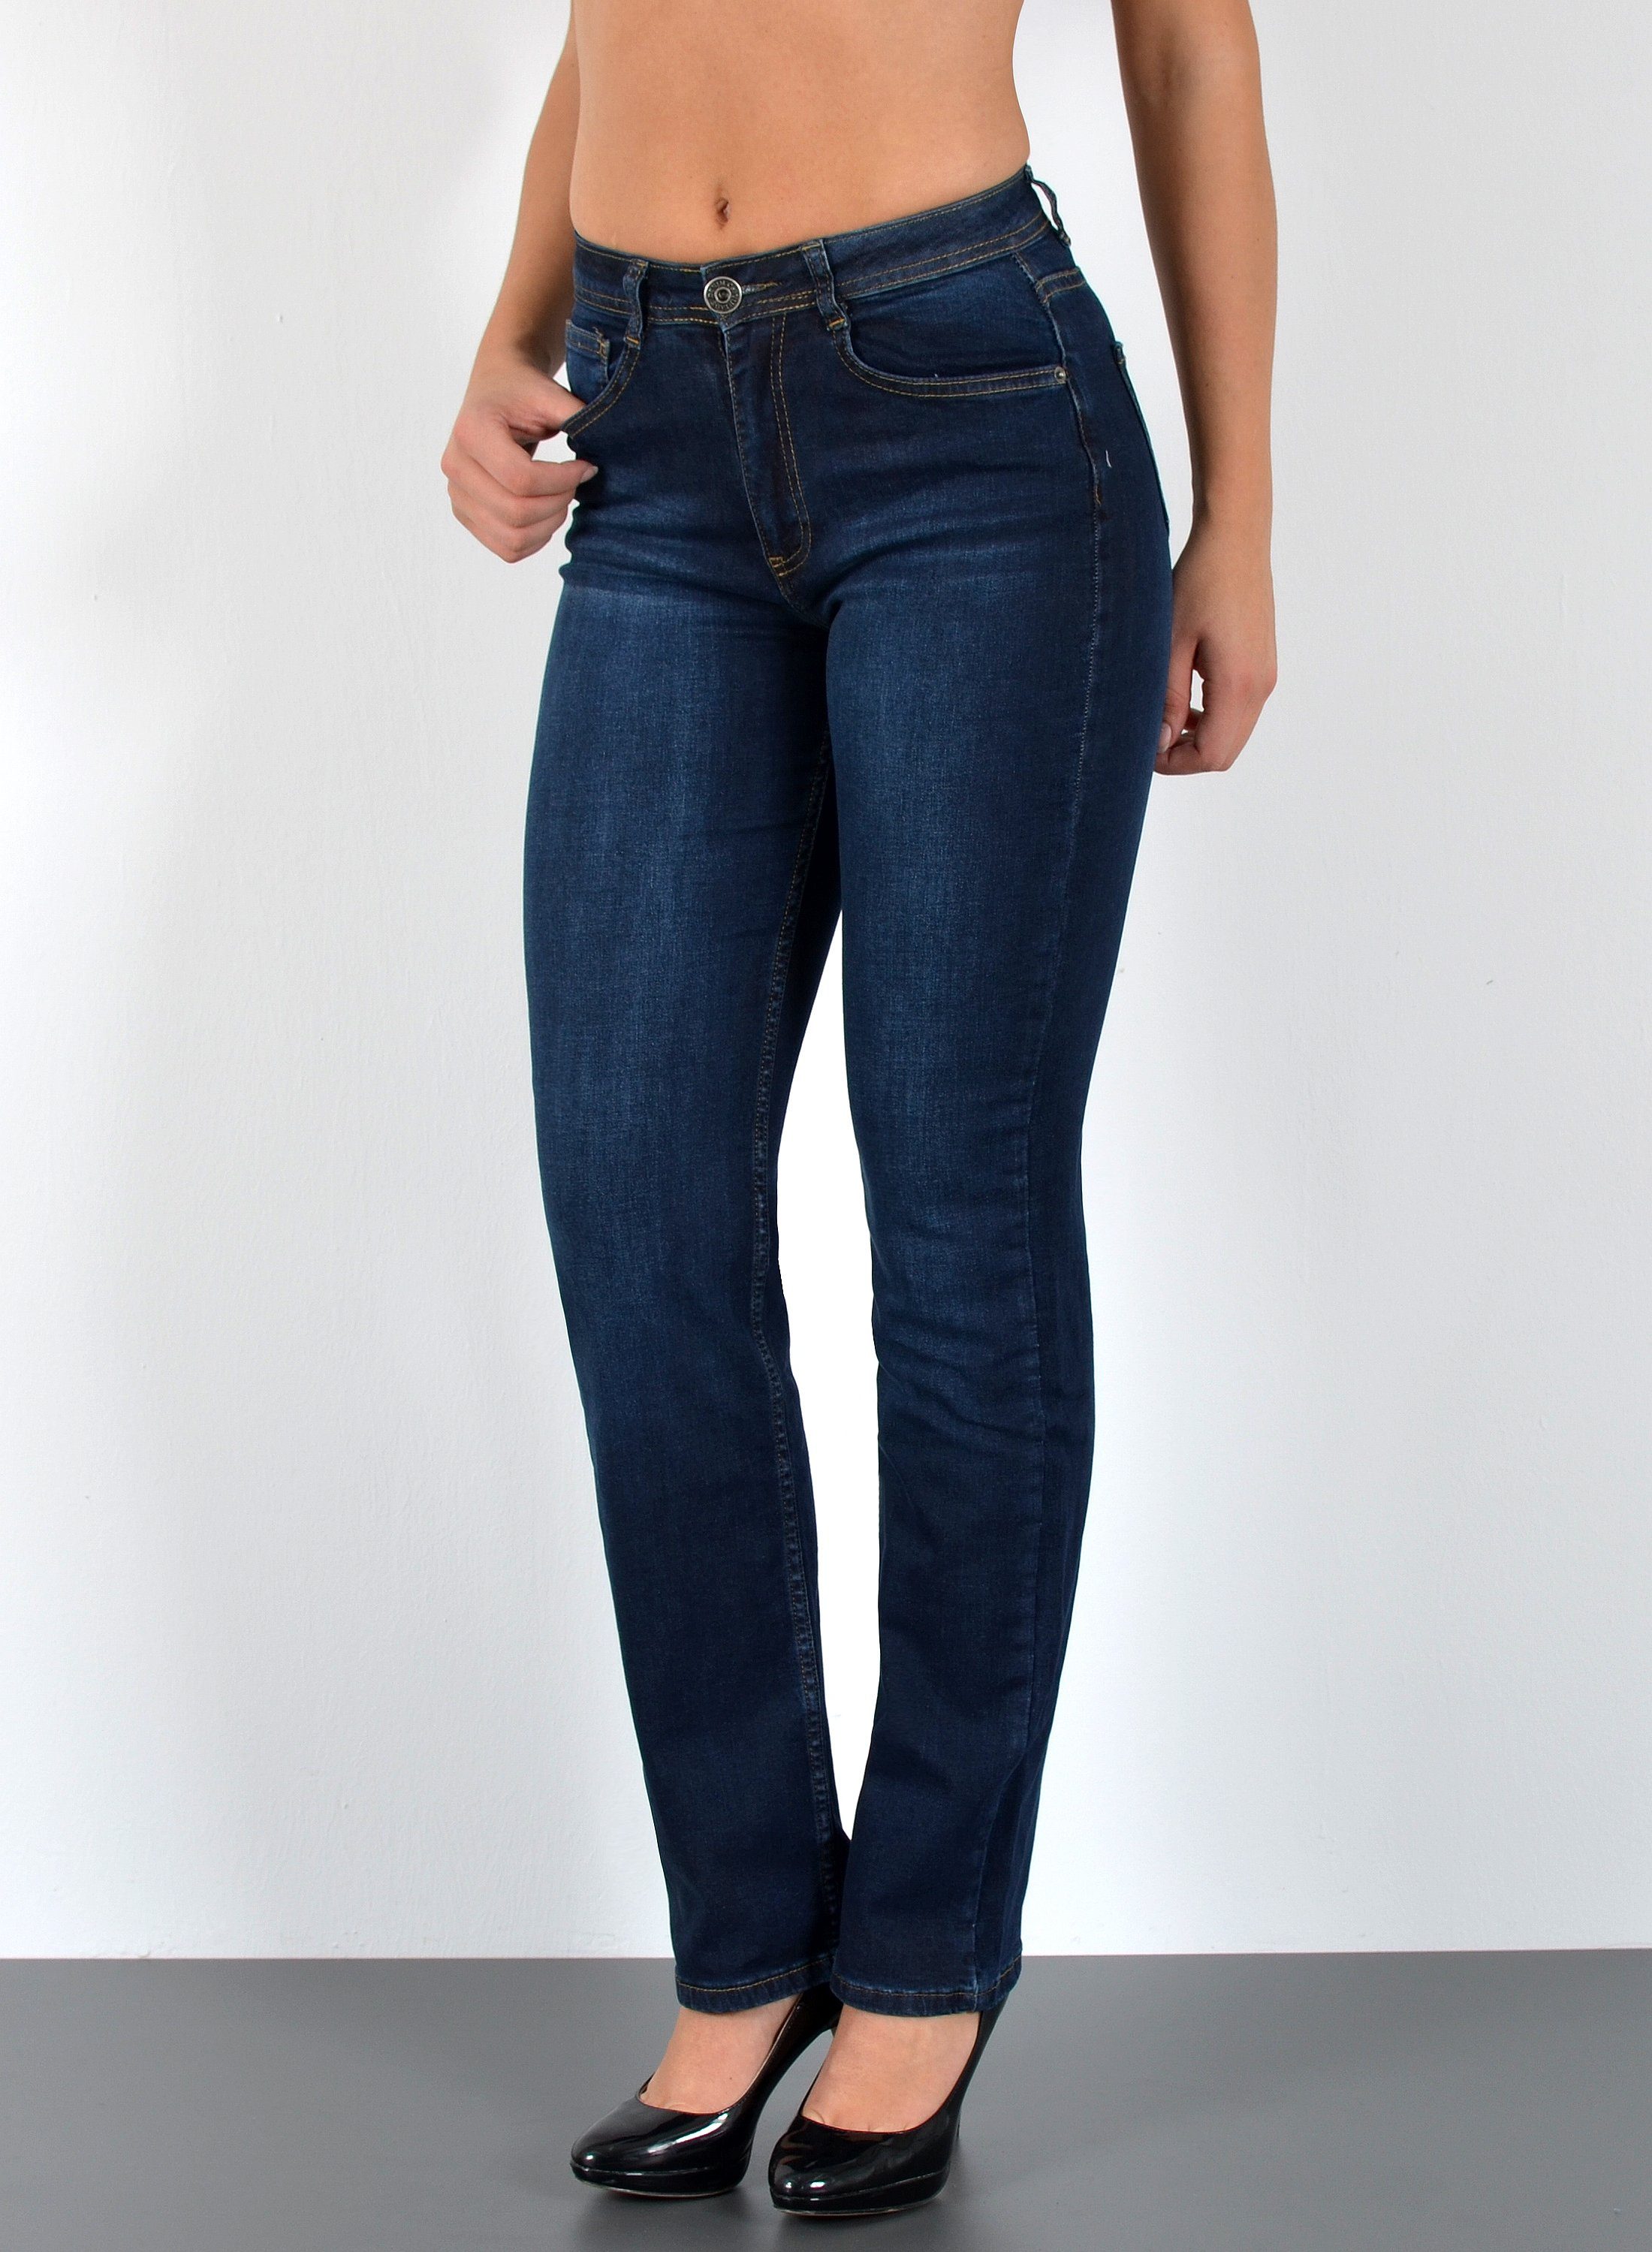 Günstige Jeans kaufen » Bis zu 30% Rabatt | OTTO